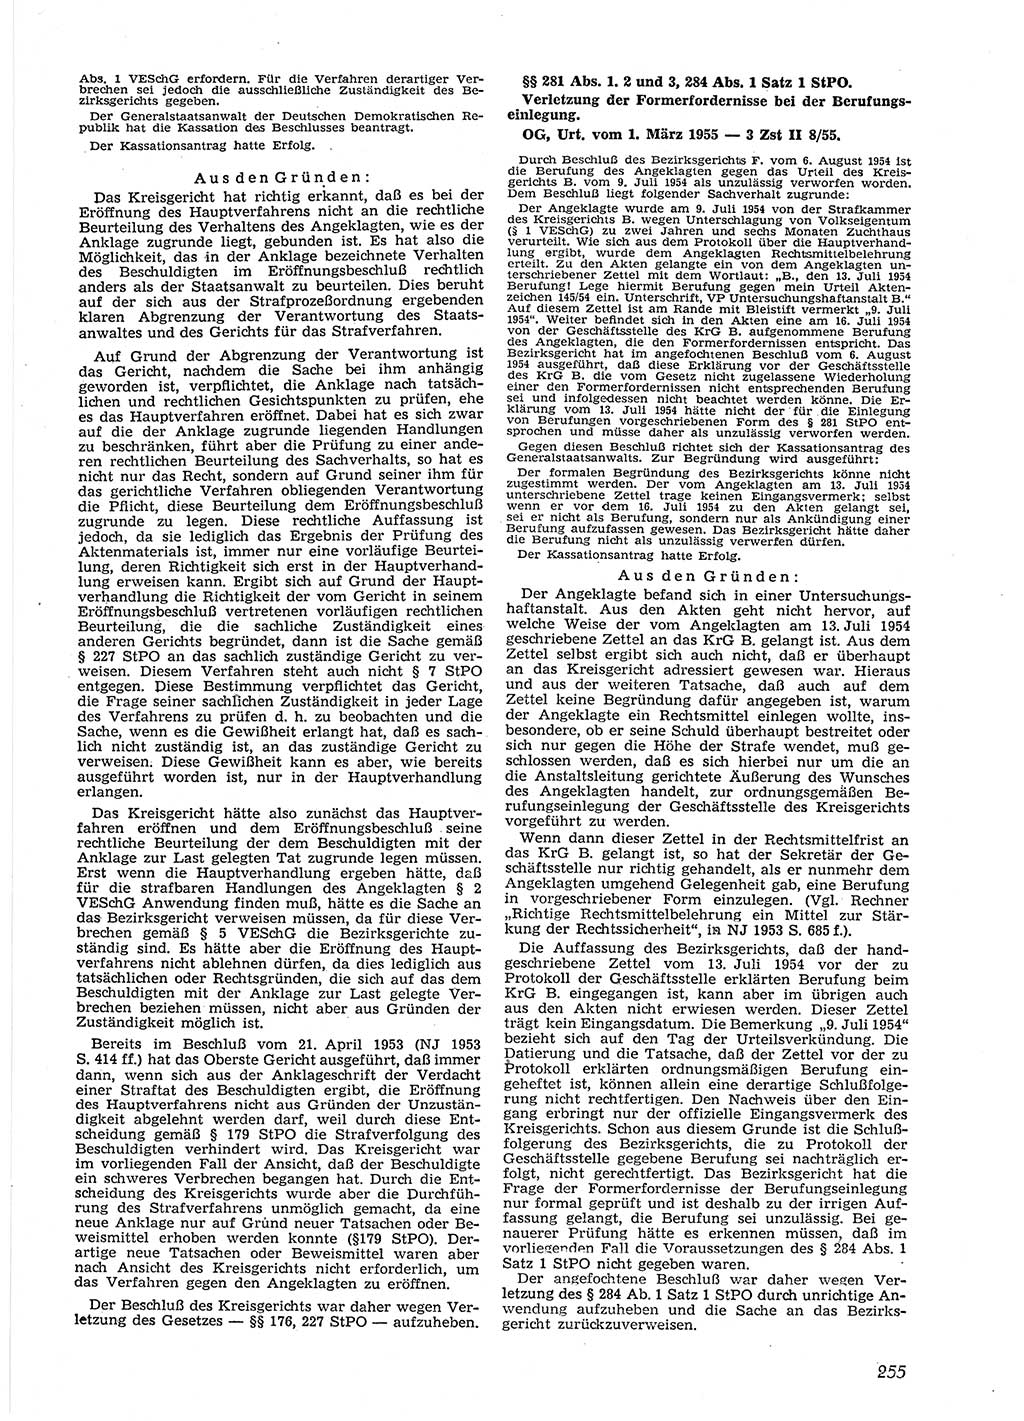 Neue Justiz (NJ), Zeitschrift für Recht und Rechtswissenschaft [Deutsche Demokratische Republik (DDR)], 9. Jahrgang 1955, Seite 255 (NJ DDR 1955, S. 255)